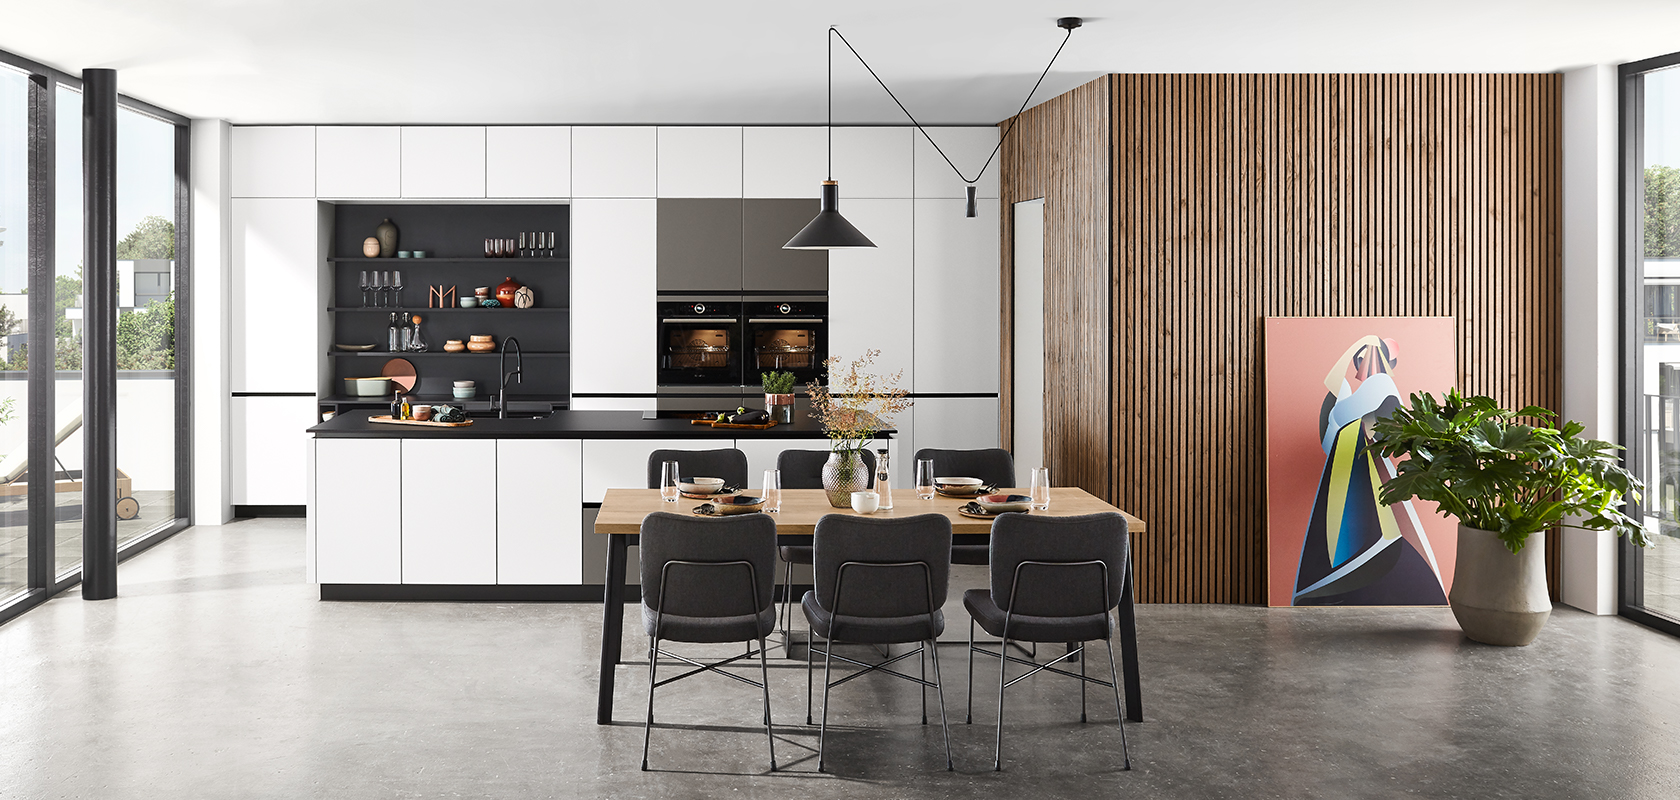 Moderne keukeninterieur met strakke zwarte en witte kasten, houten accenten en een eethoek met stijlvol meubilair onder elegante hanglampen.